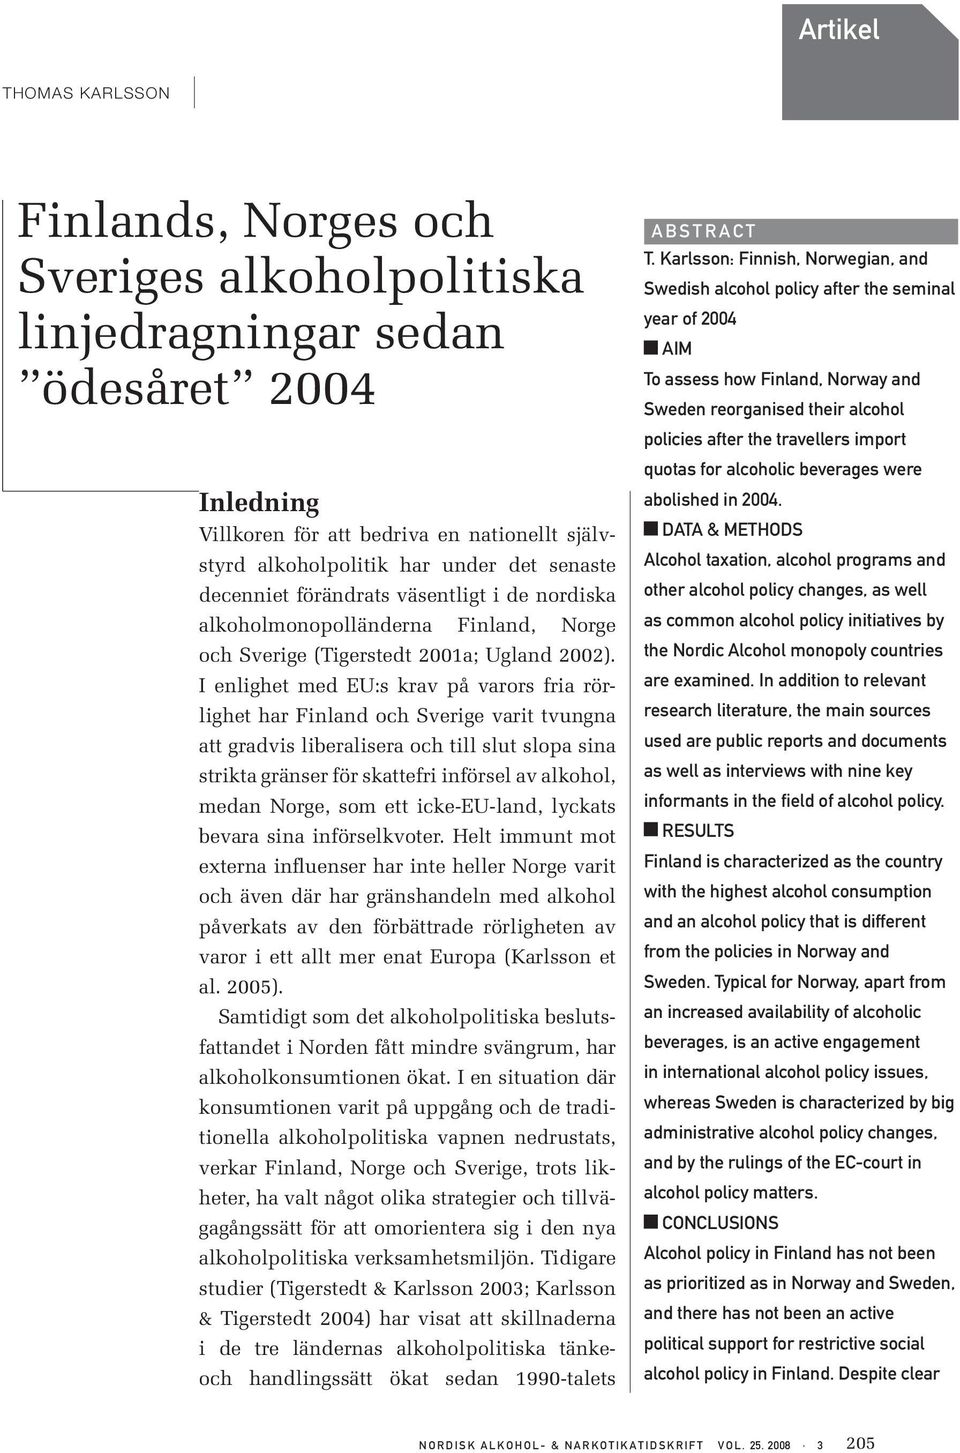 I enlighet med EU:s krav på varors fria rörlighet har Finland och Sverige varit tvungna att gradvis liberalisera och till slut slopa sina strikta gränser för skattefri införsel av alkohol, medan